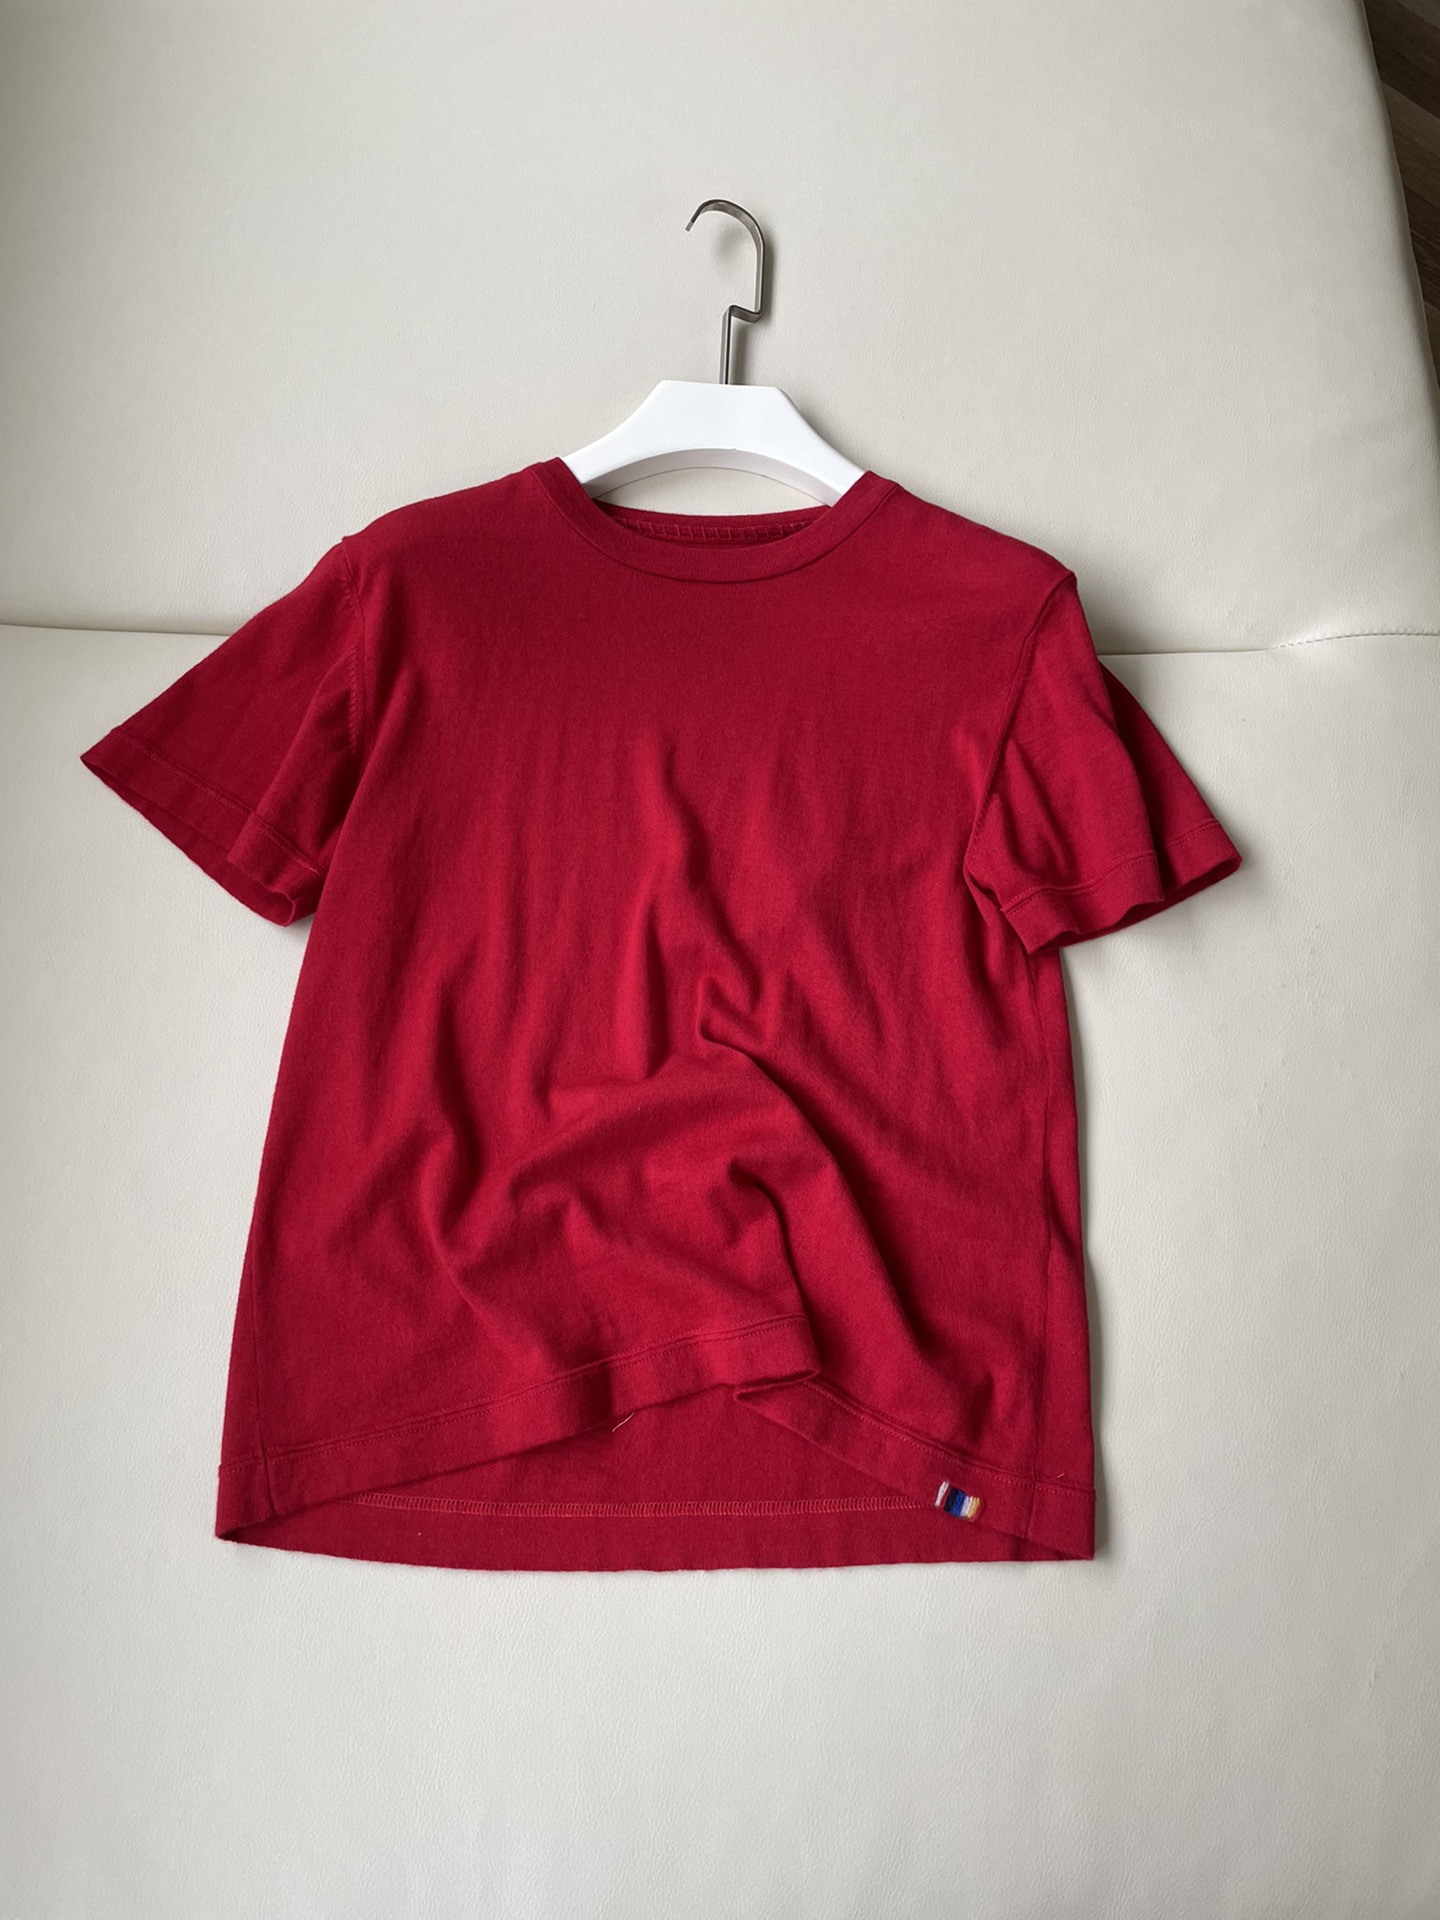 Pszdyyq 古巴棉羊绒混纺T恤由30%羊绒和qdew%棉制成，采用平锁缝线、下摆和针织领口设计。普通羊绒与棉的清爽结构和干净透气性融为一体。在炎热的天气里很好，或者作为内层。这款t恤实穿和舒适度都极佳。推荐～颜色：绿色红色尺码：SML